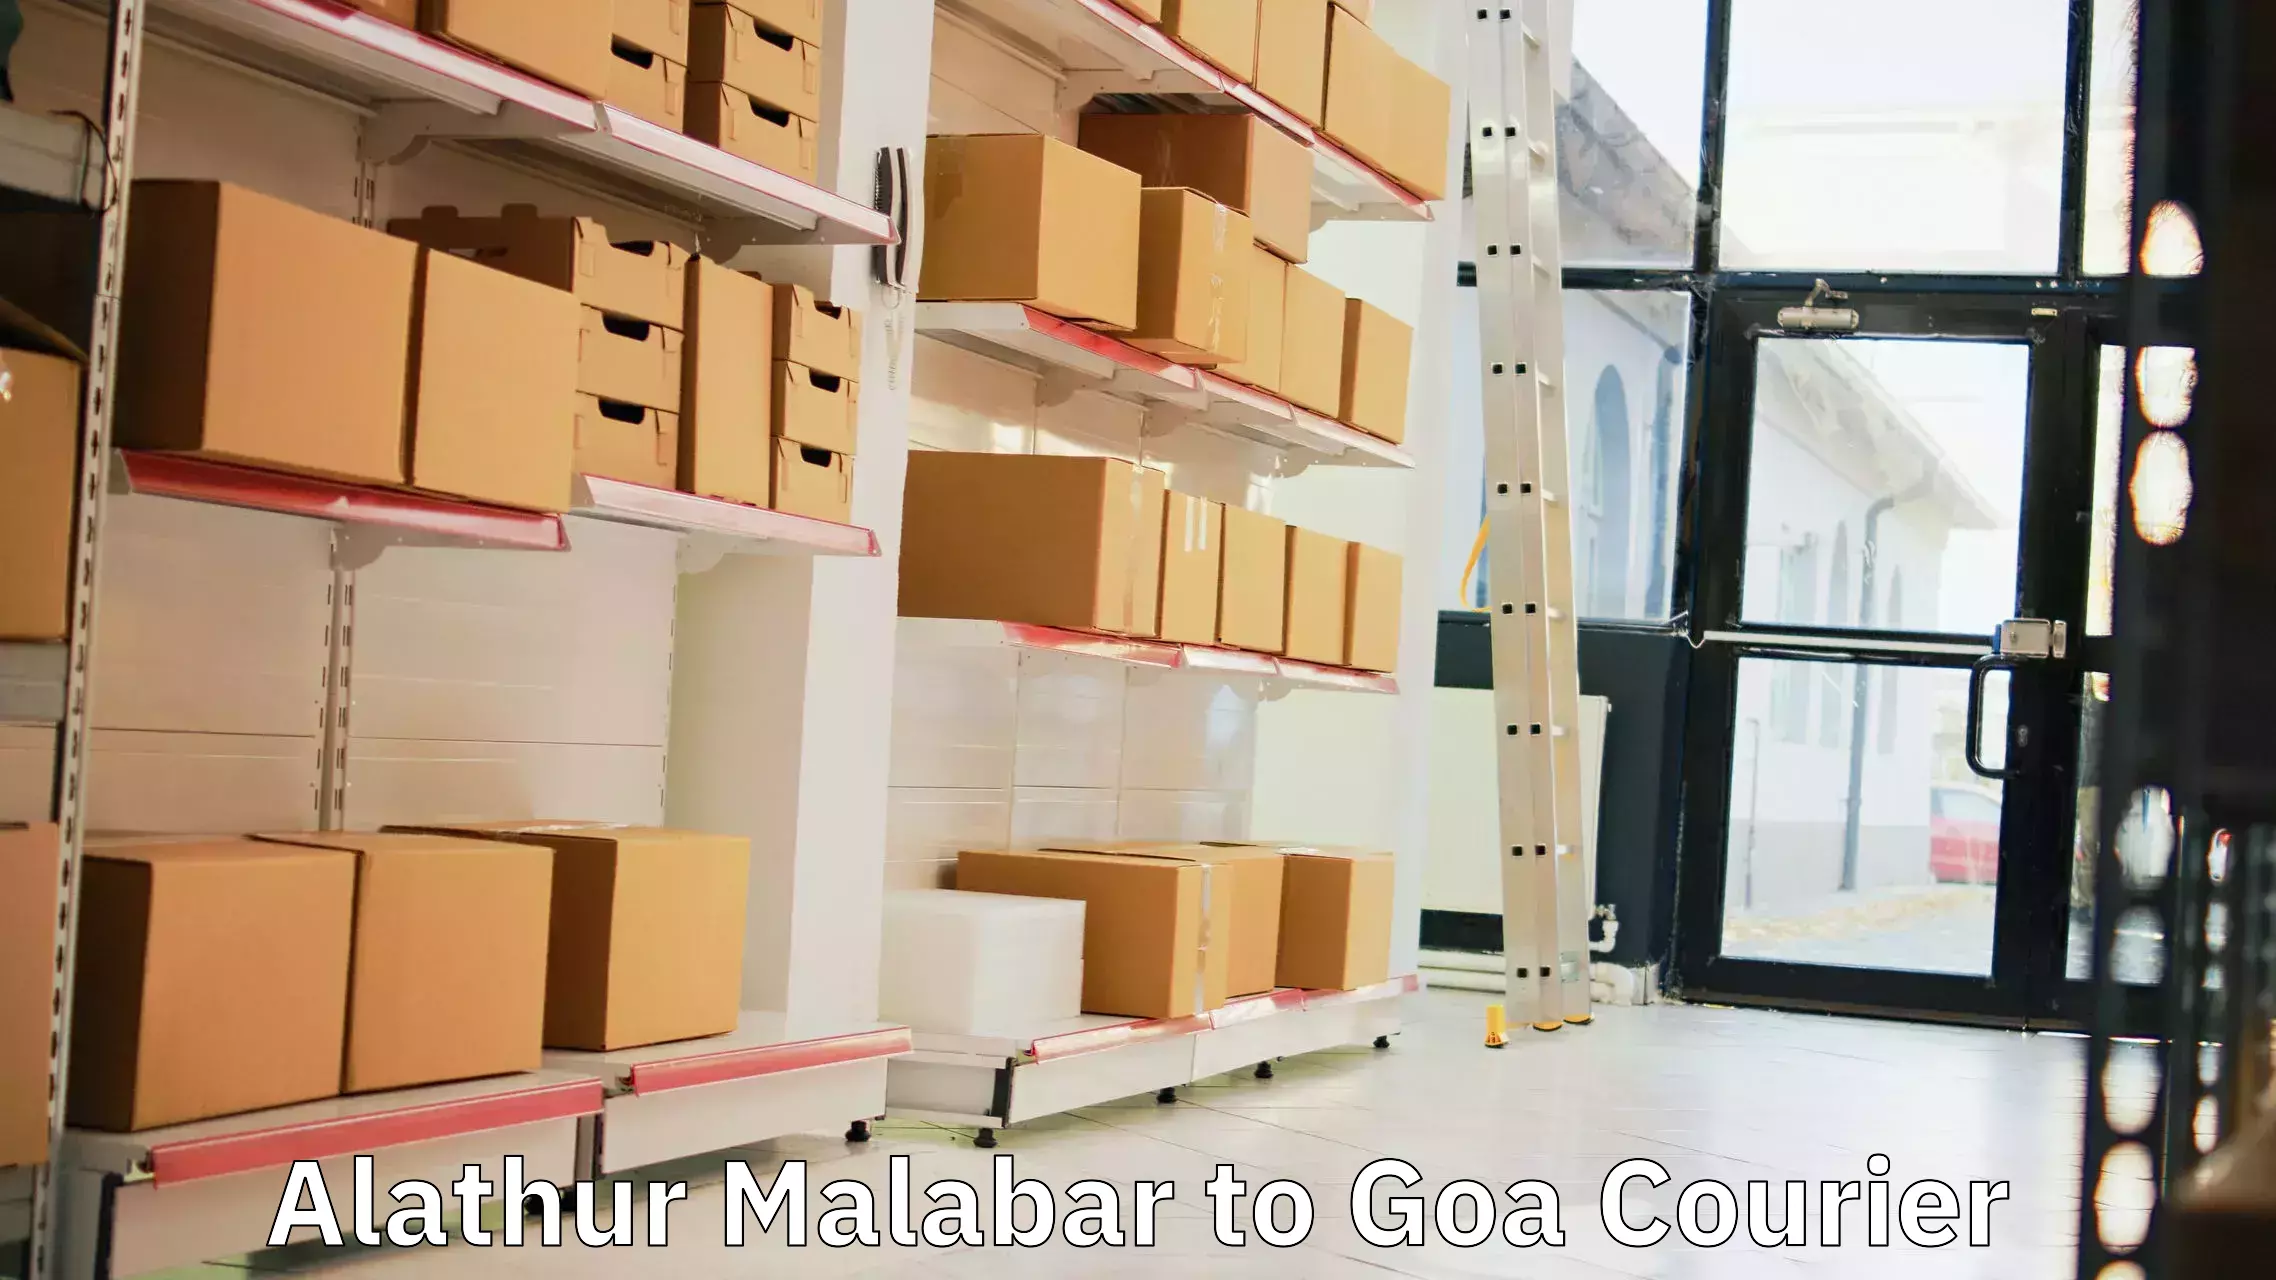 24/7 shipping services Alathur Malabar to South Goa